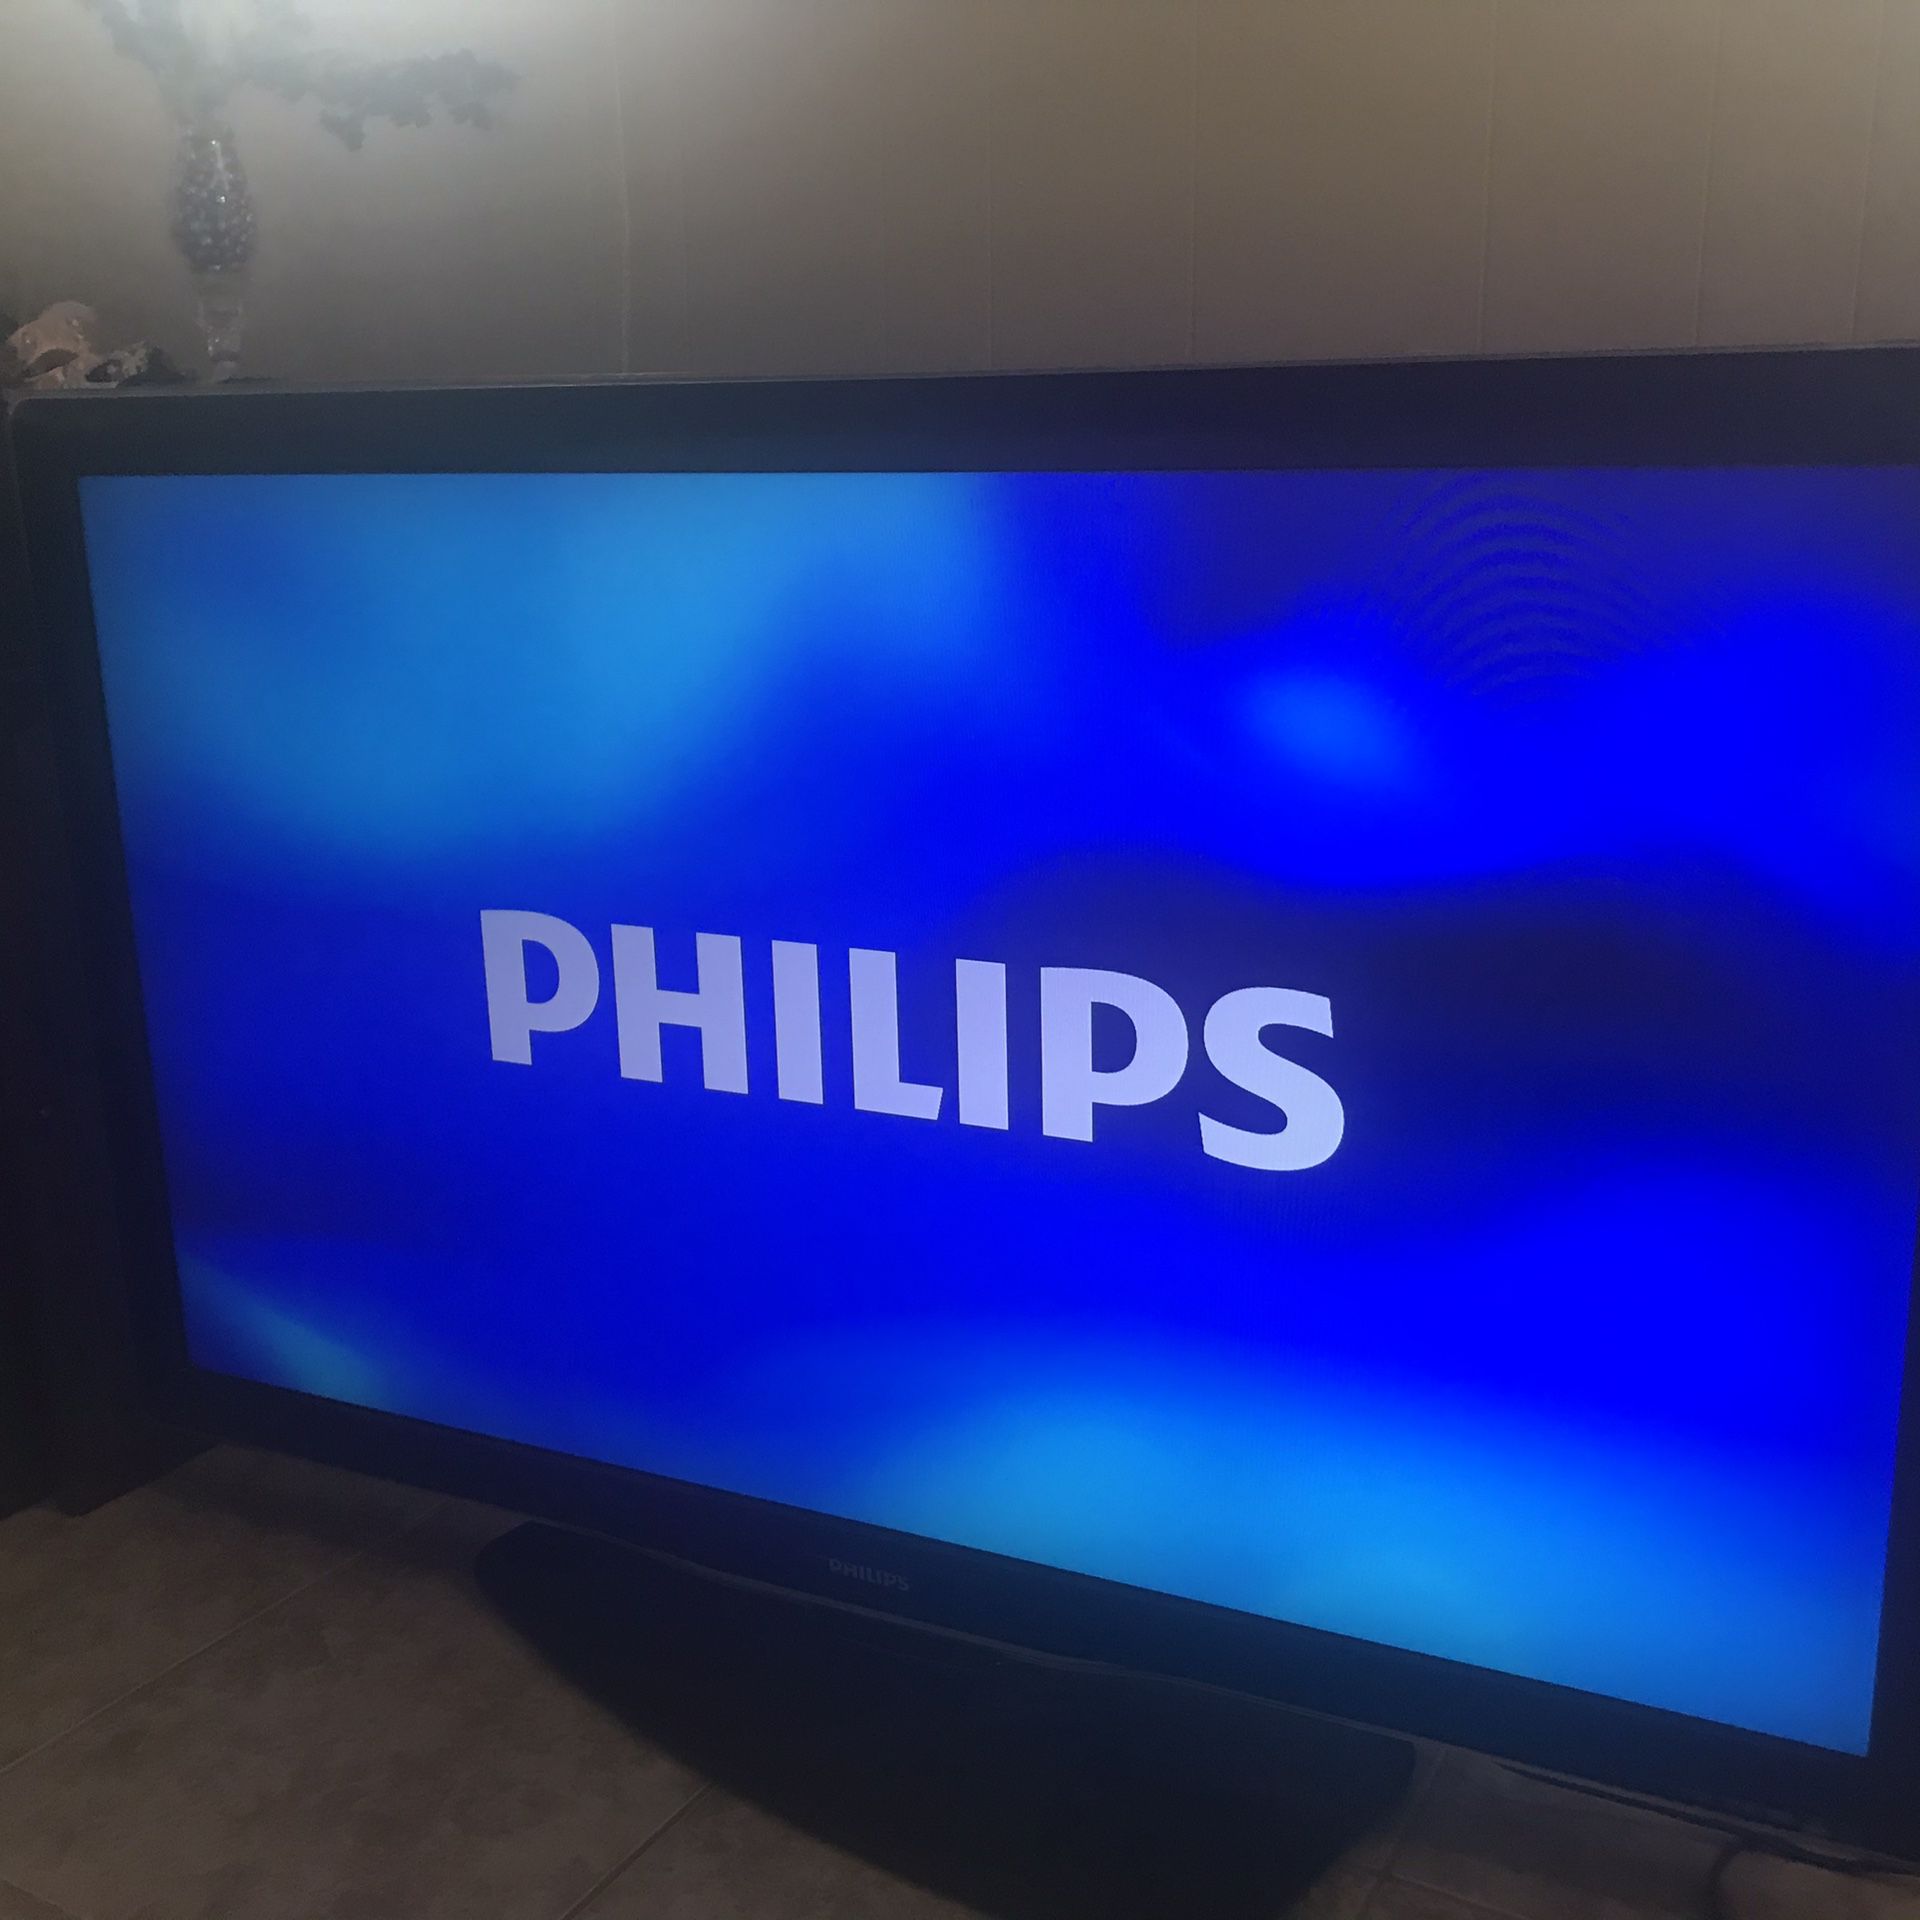 Phillips Lg Tv 55” tv